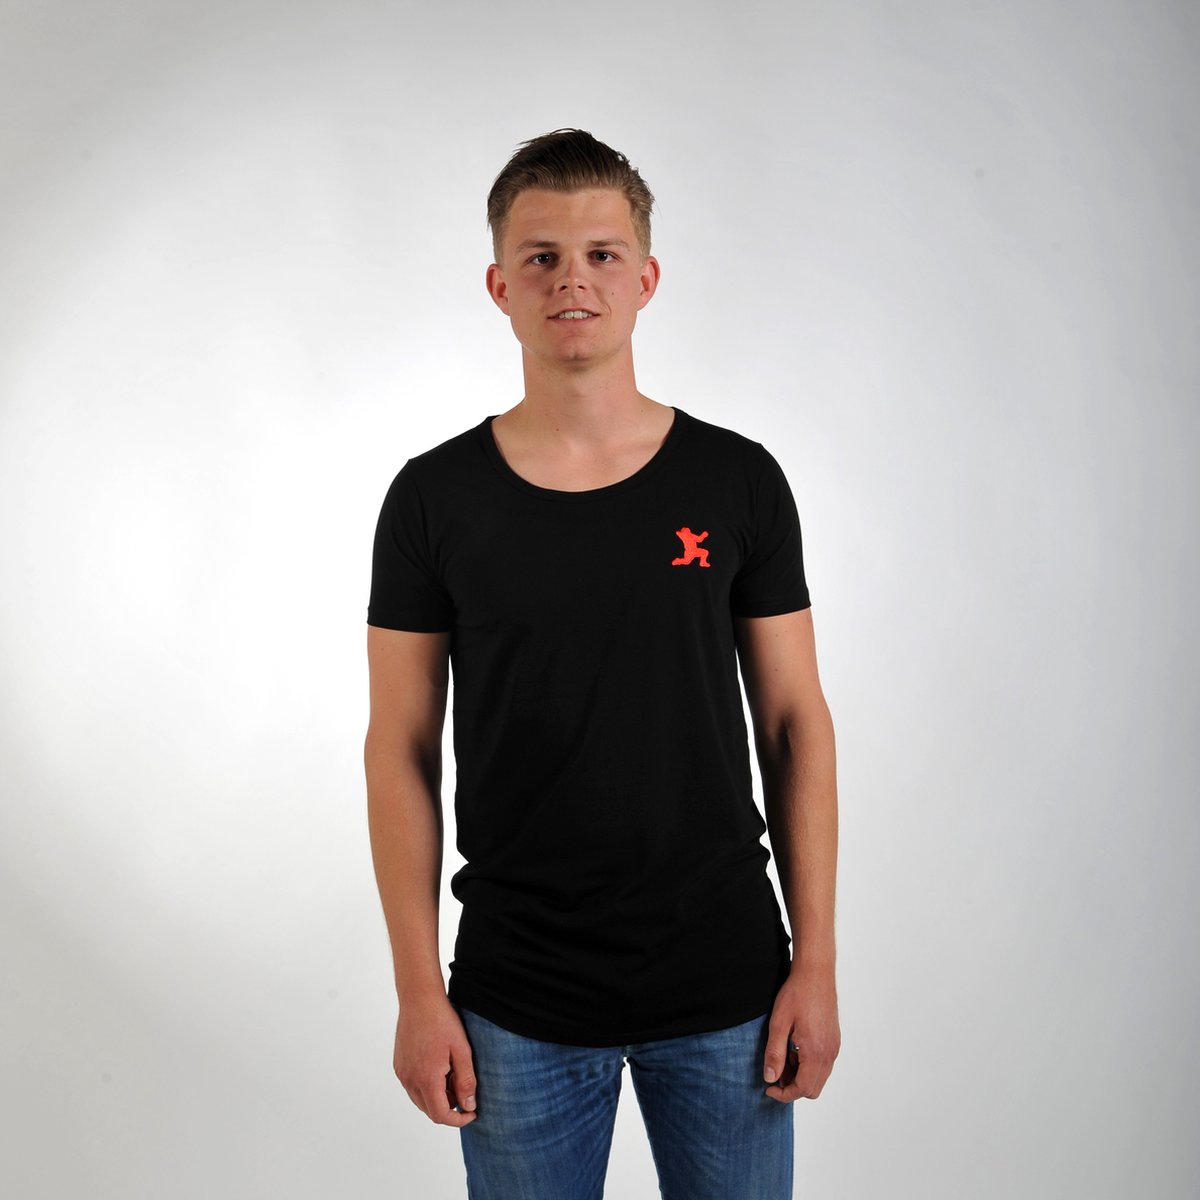 Imperatore - Andy van der Meijde t-shirt - zwart - rood logo - Maat M